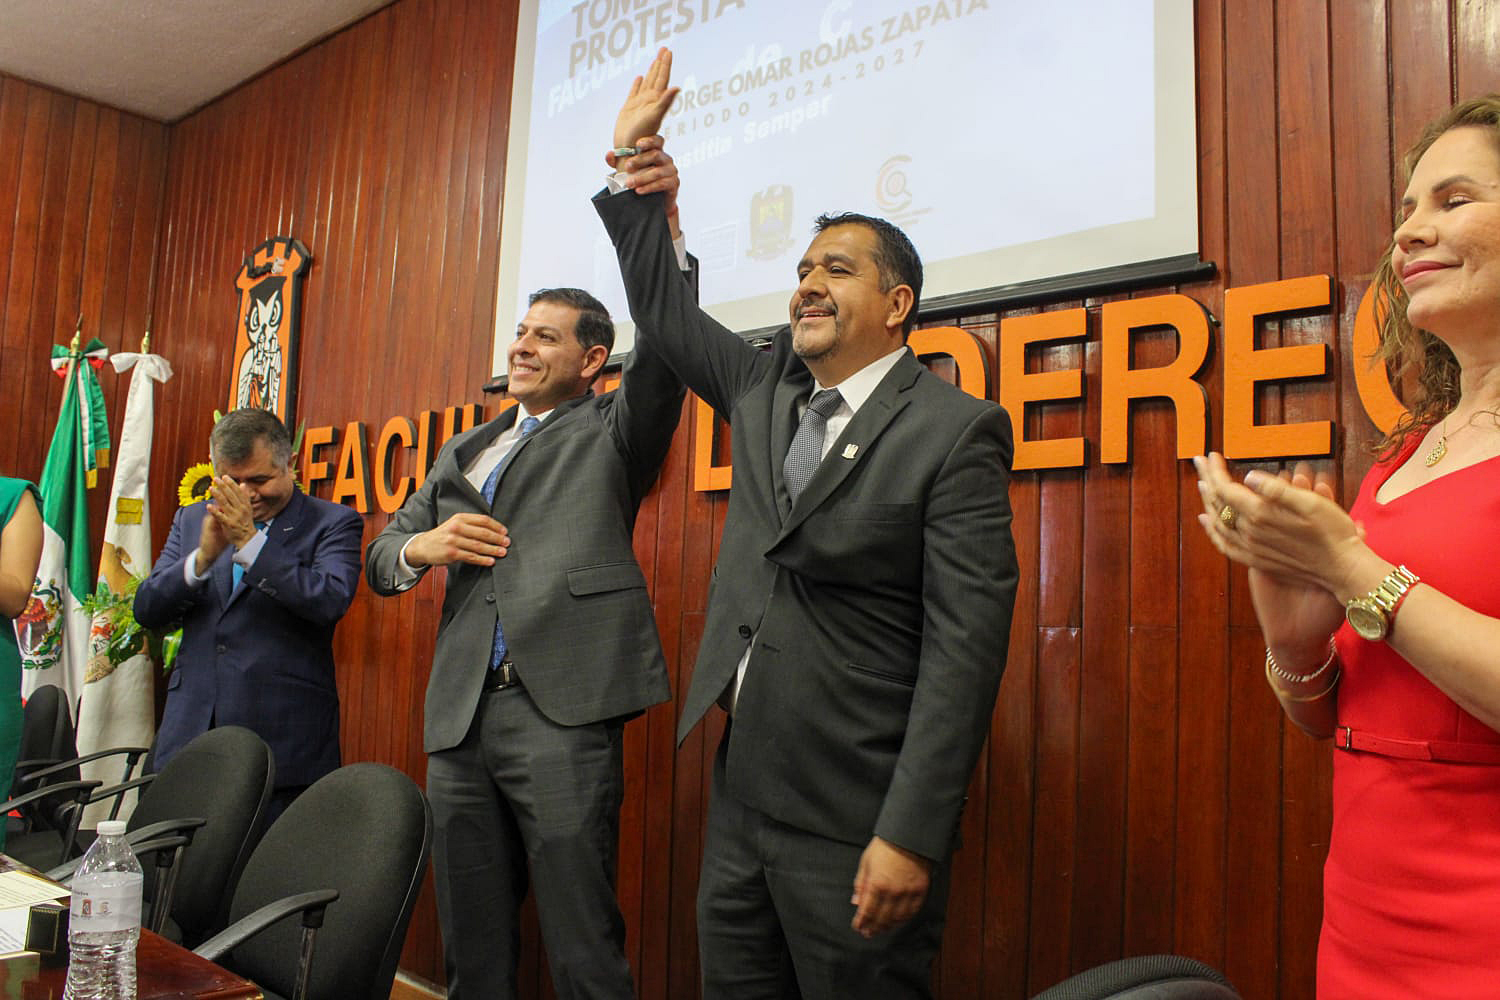 El M.D. Jorge Omar Rojas Zapata es el Nuevo Director de la Facultad de Derecho UAdeC-UT